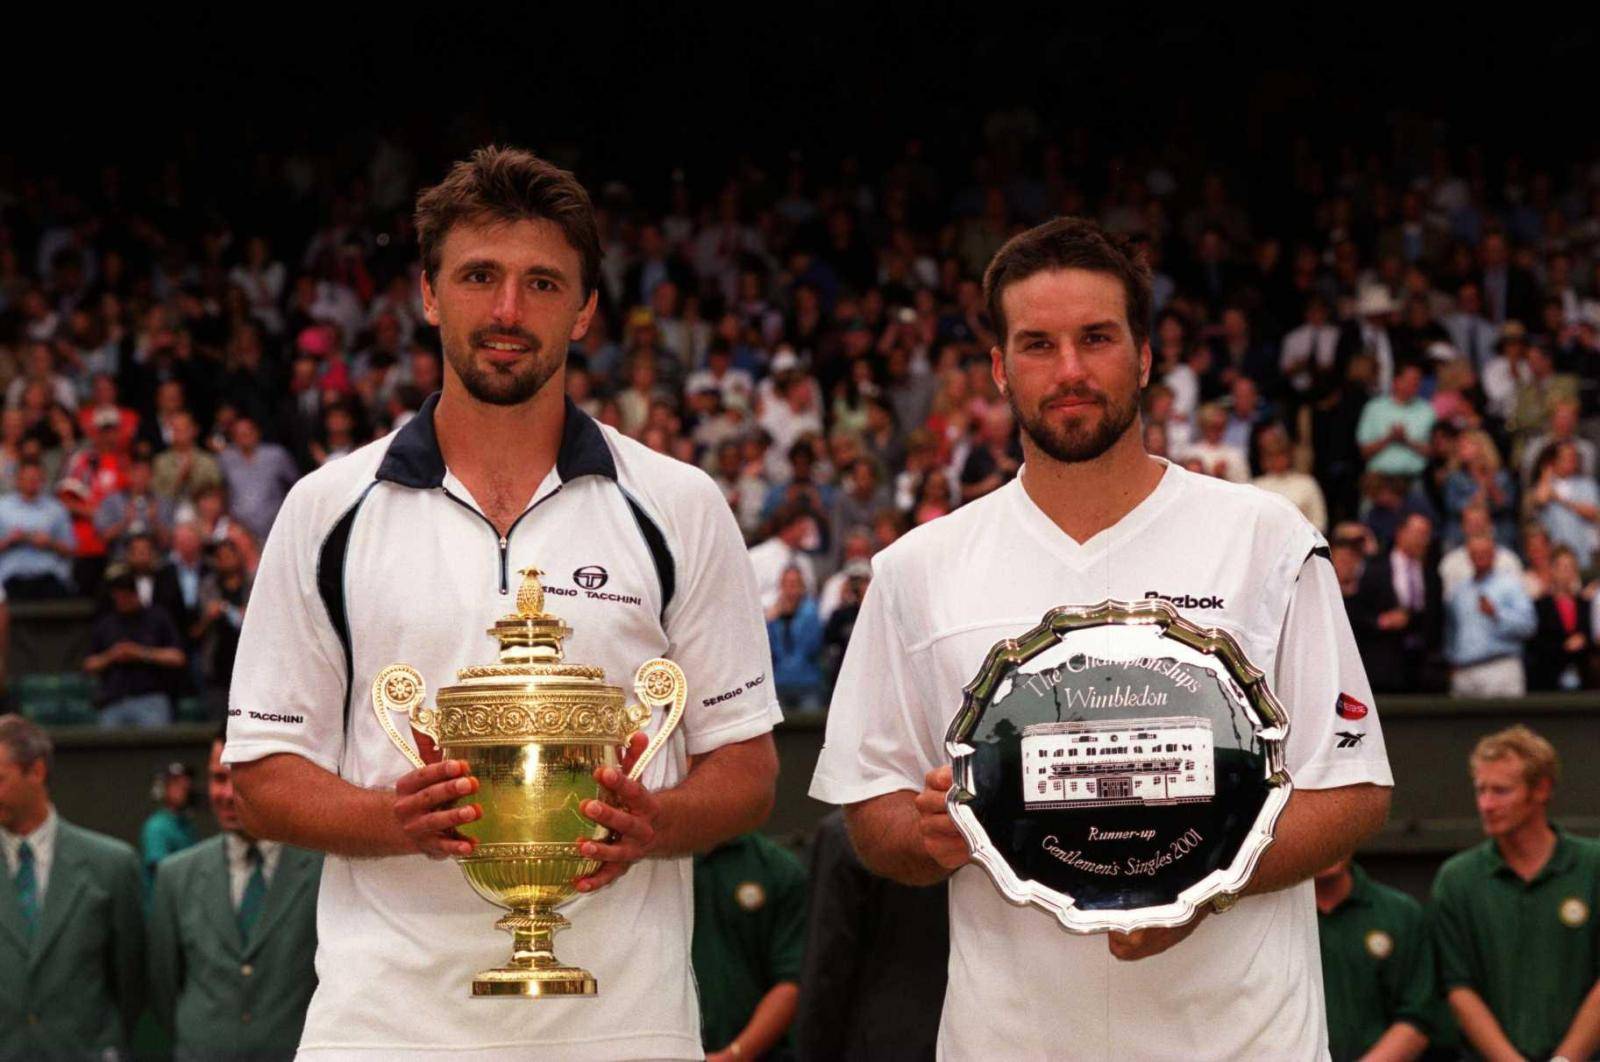 Tennis - Wimbledon Championships - Men's Final